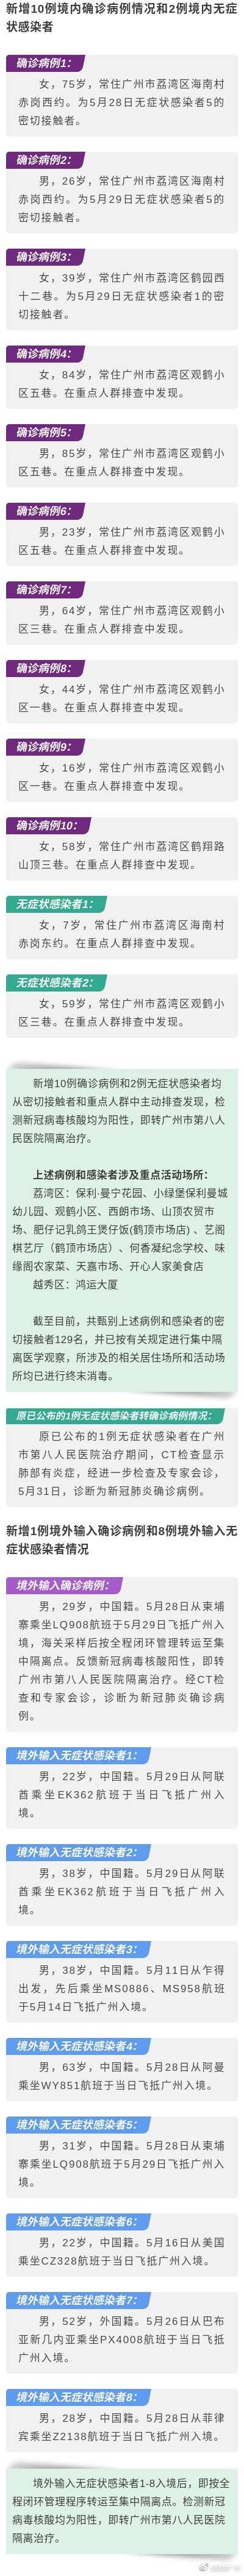 广州公布新增病例详情和重点活动场所